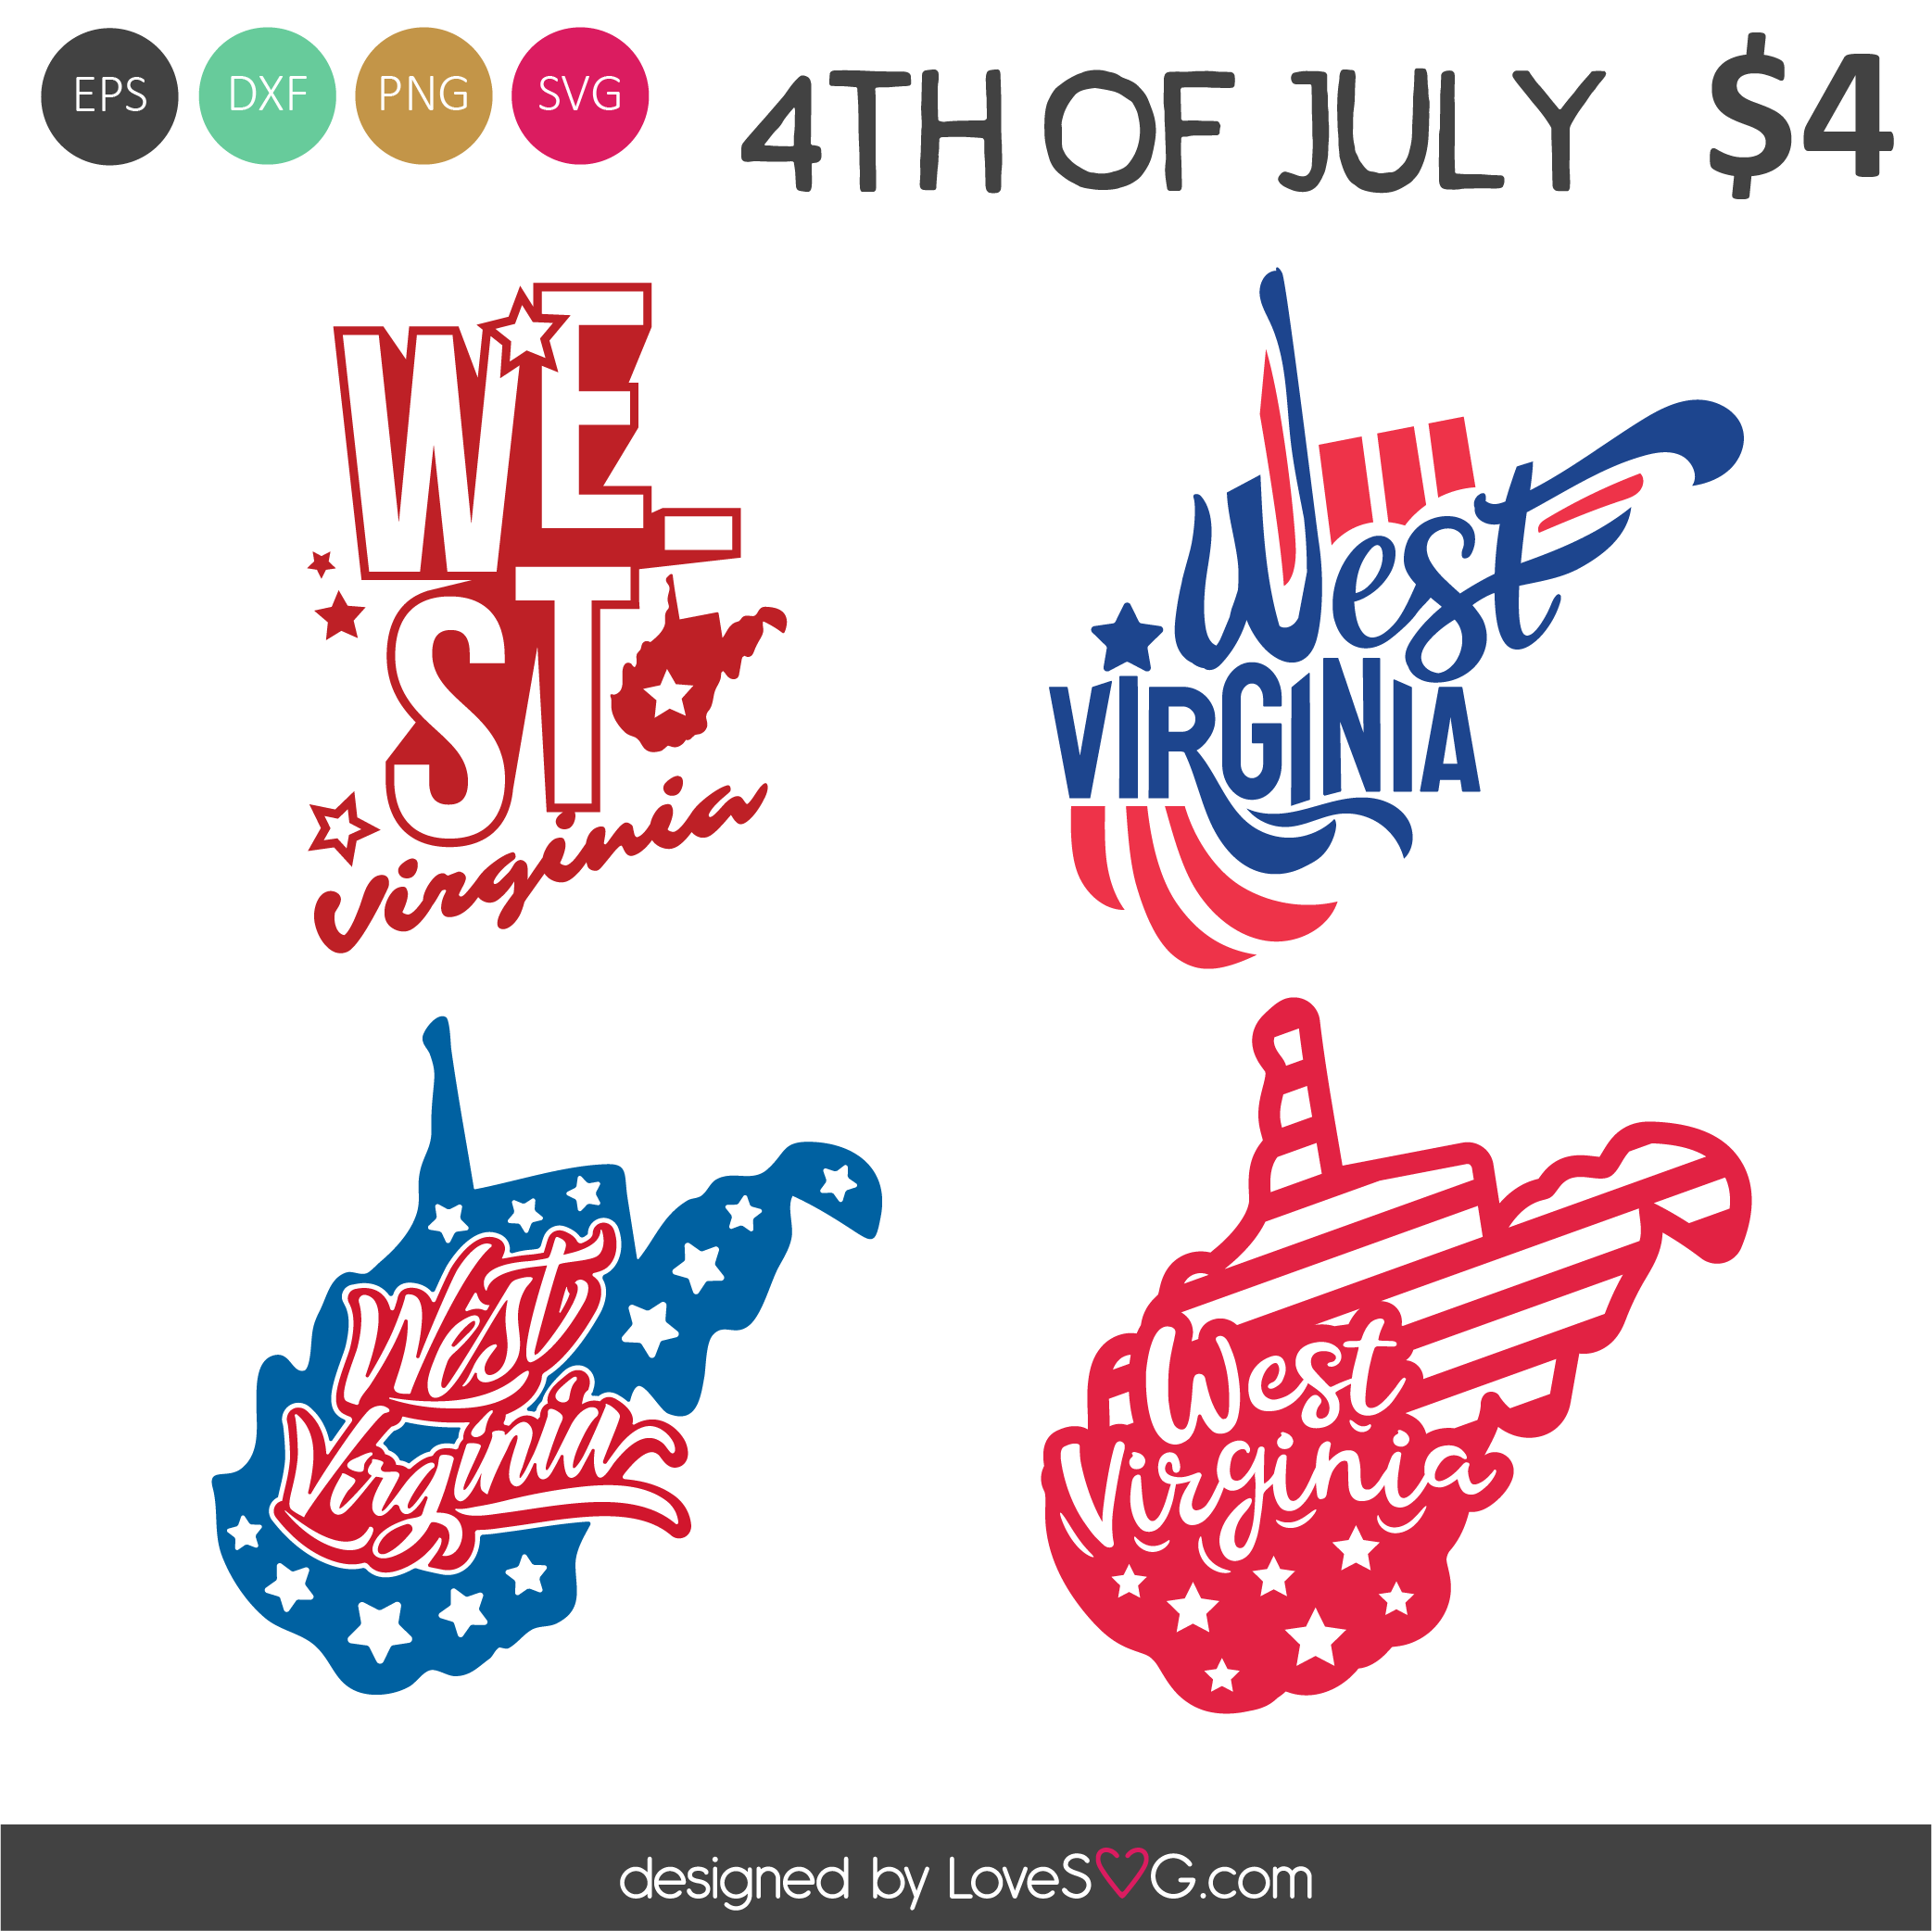 West Virginia SVG Cut Files - Lovesvg.com